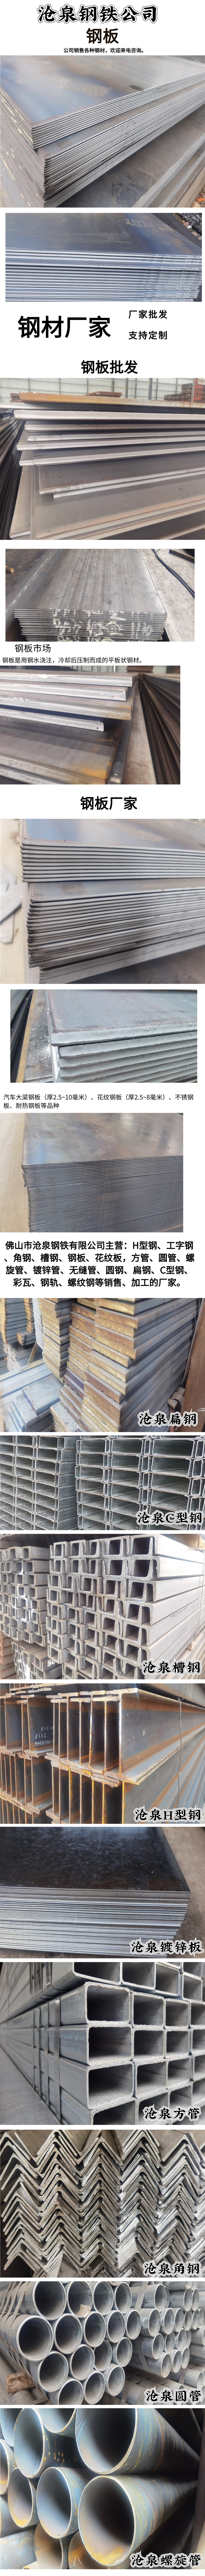 深圳復合鋼板 高強度鋼板型號